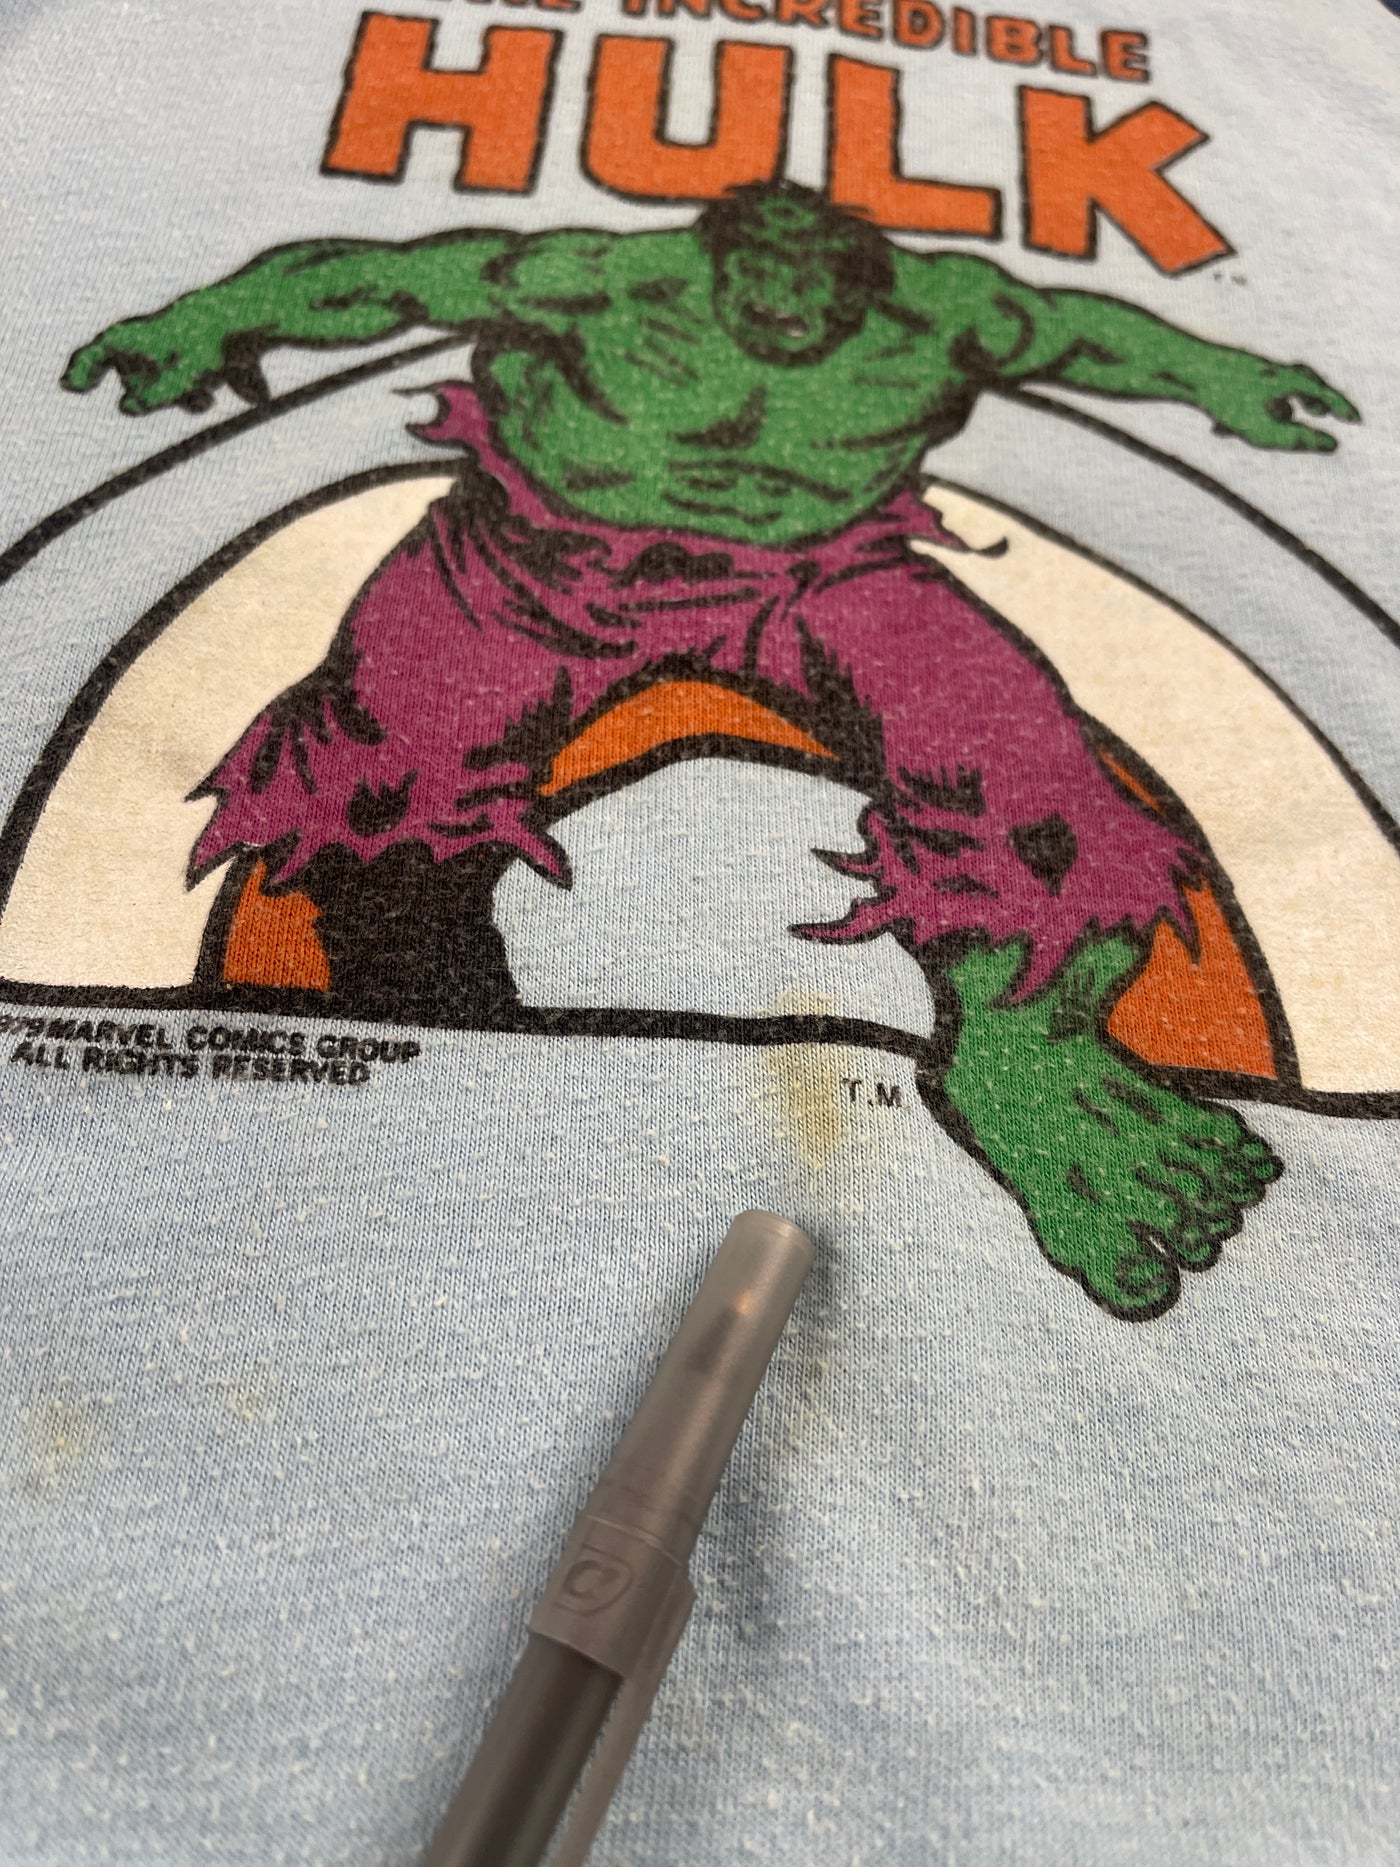 Vintage ‘79 Incredible Hulk 3T